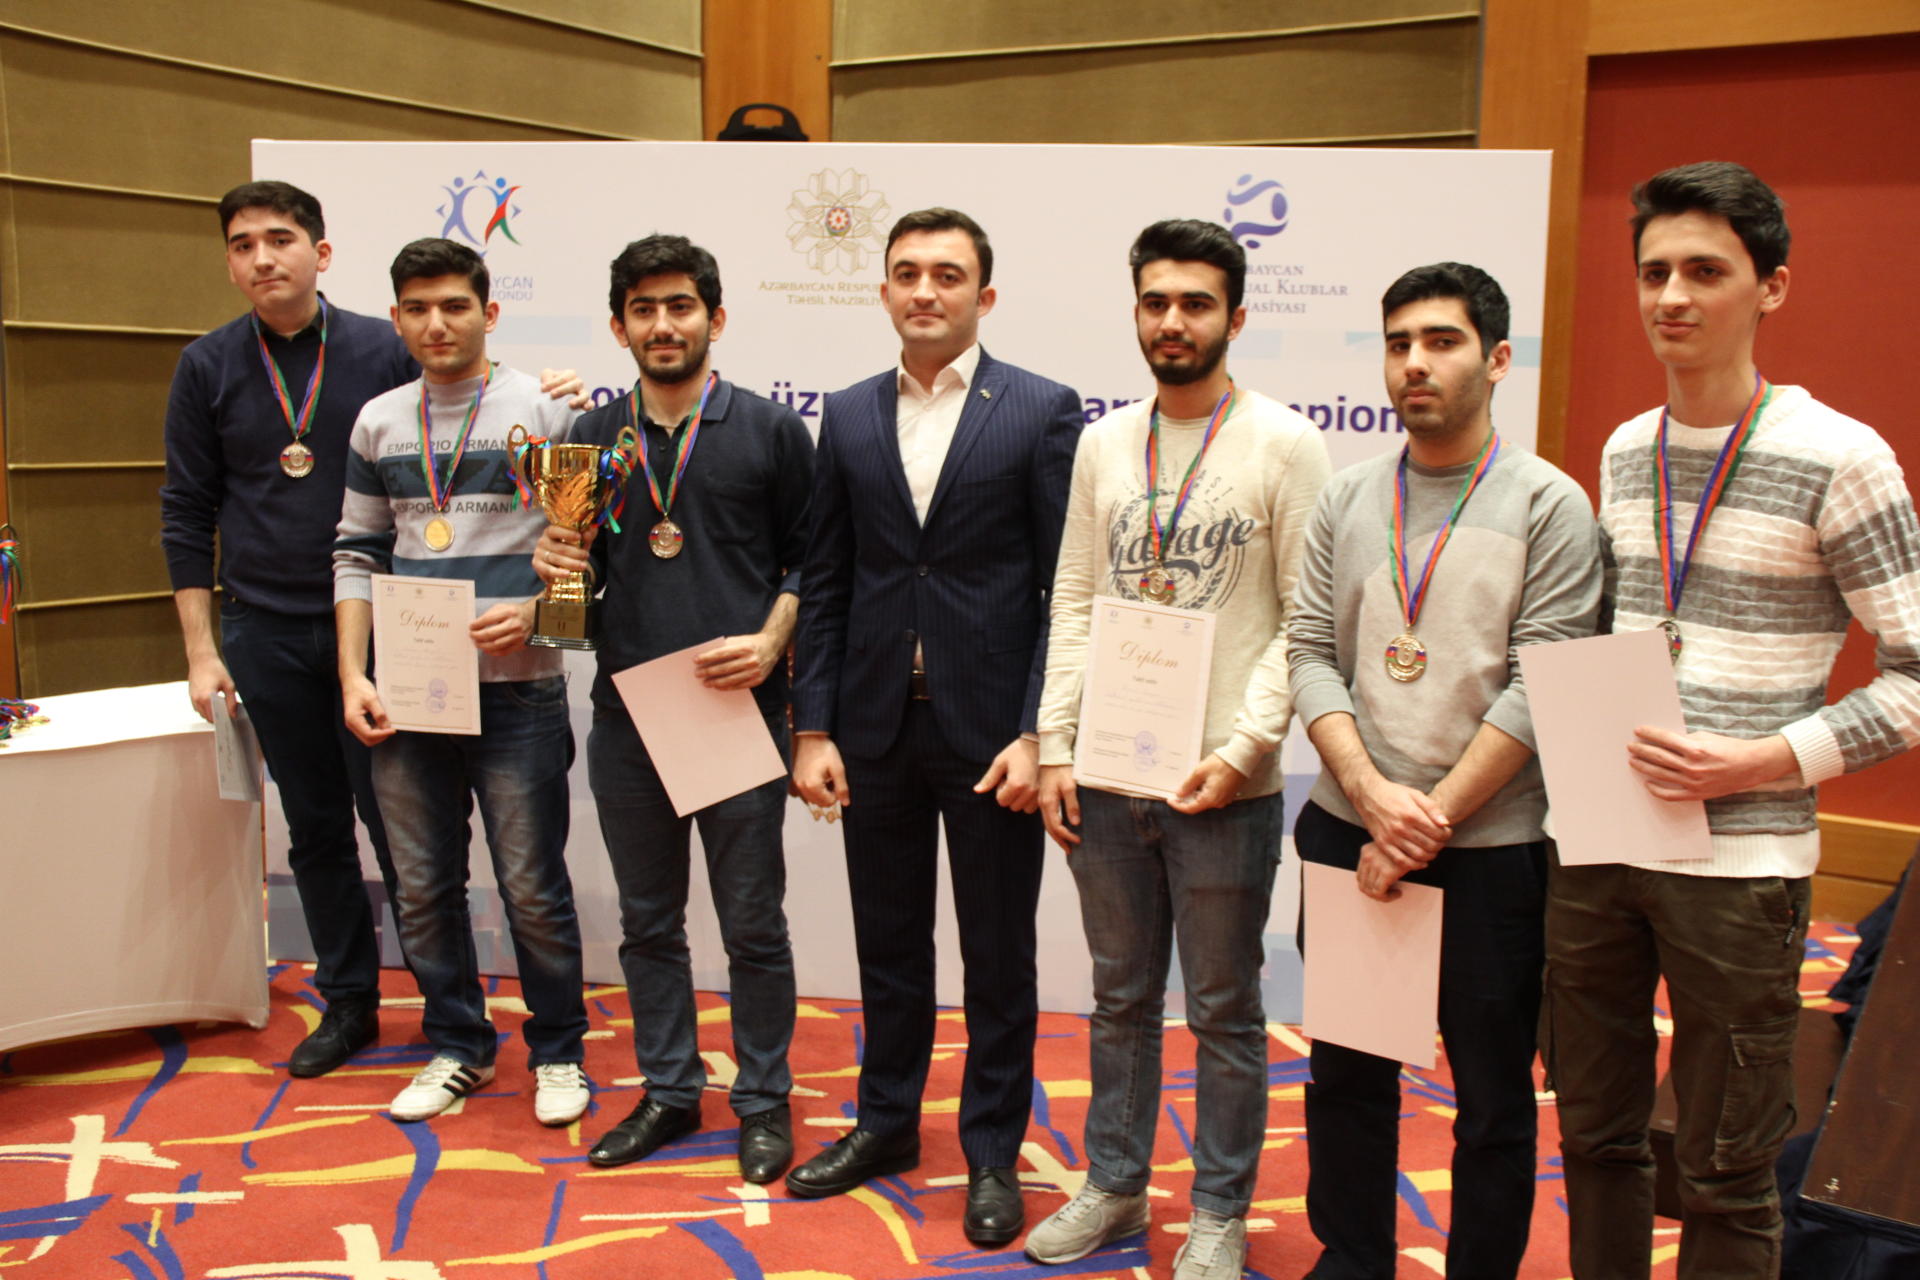 Определились лучшие студенческие команды Азербайджана (ФОТО)